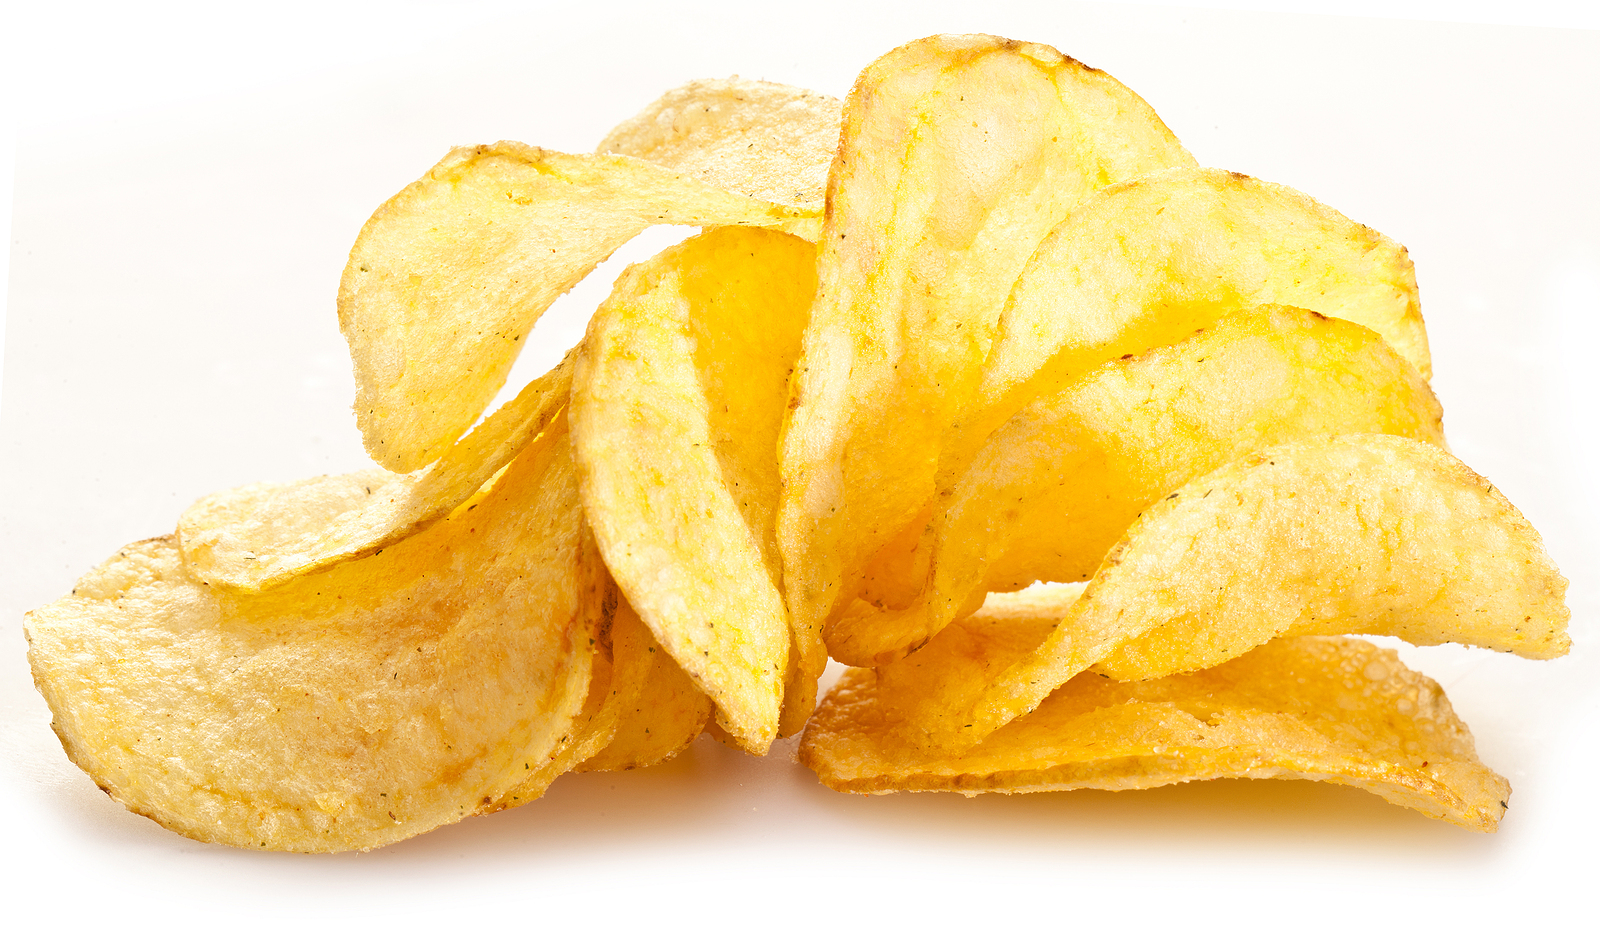 Potato chips, bag of chips Ro